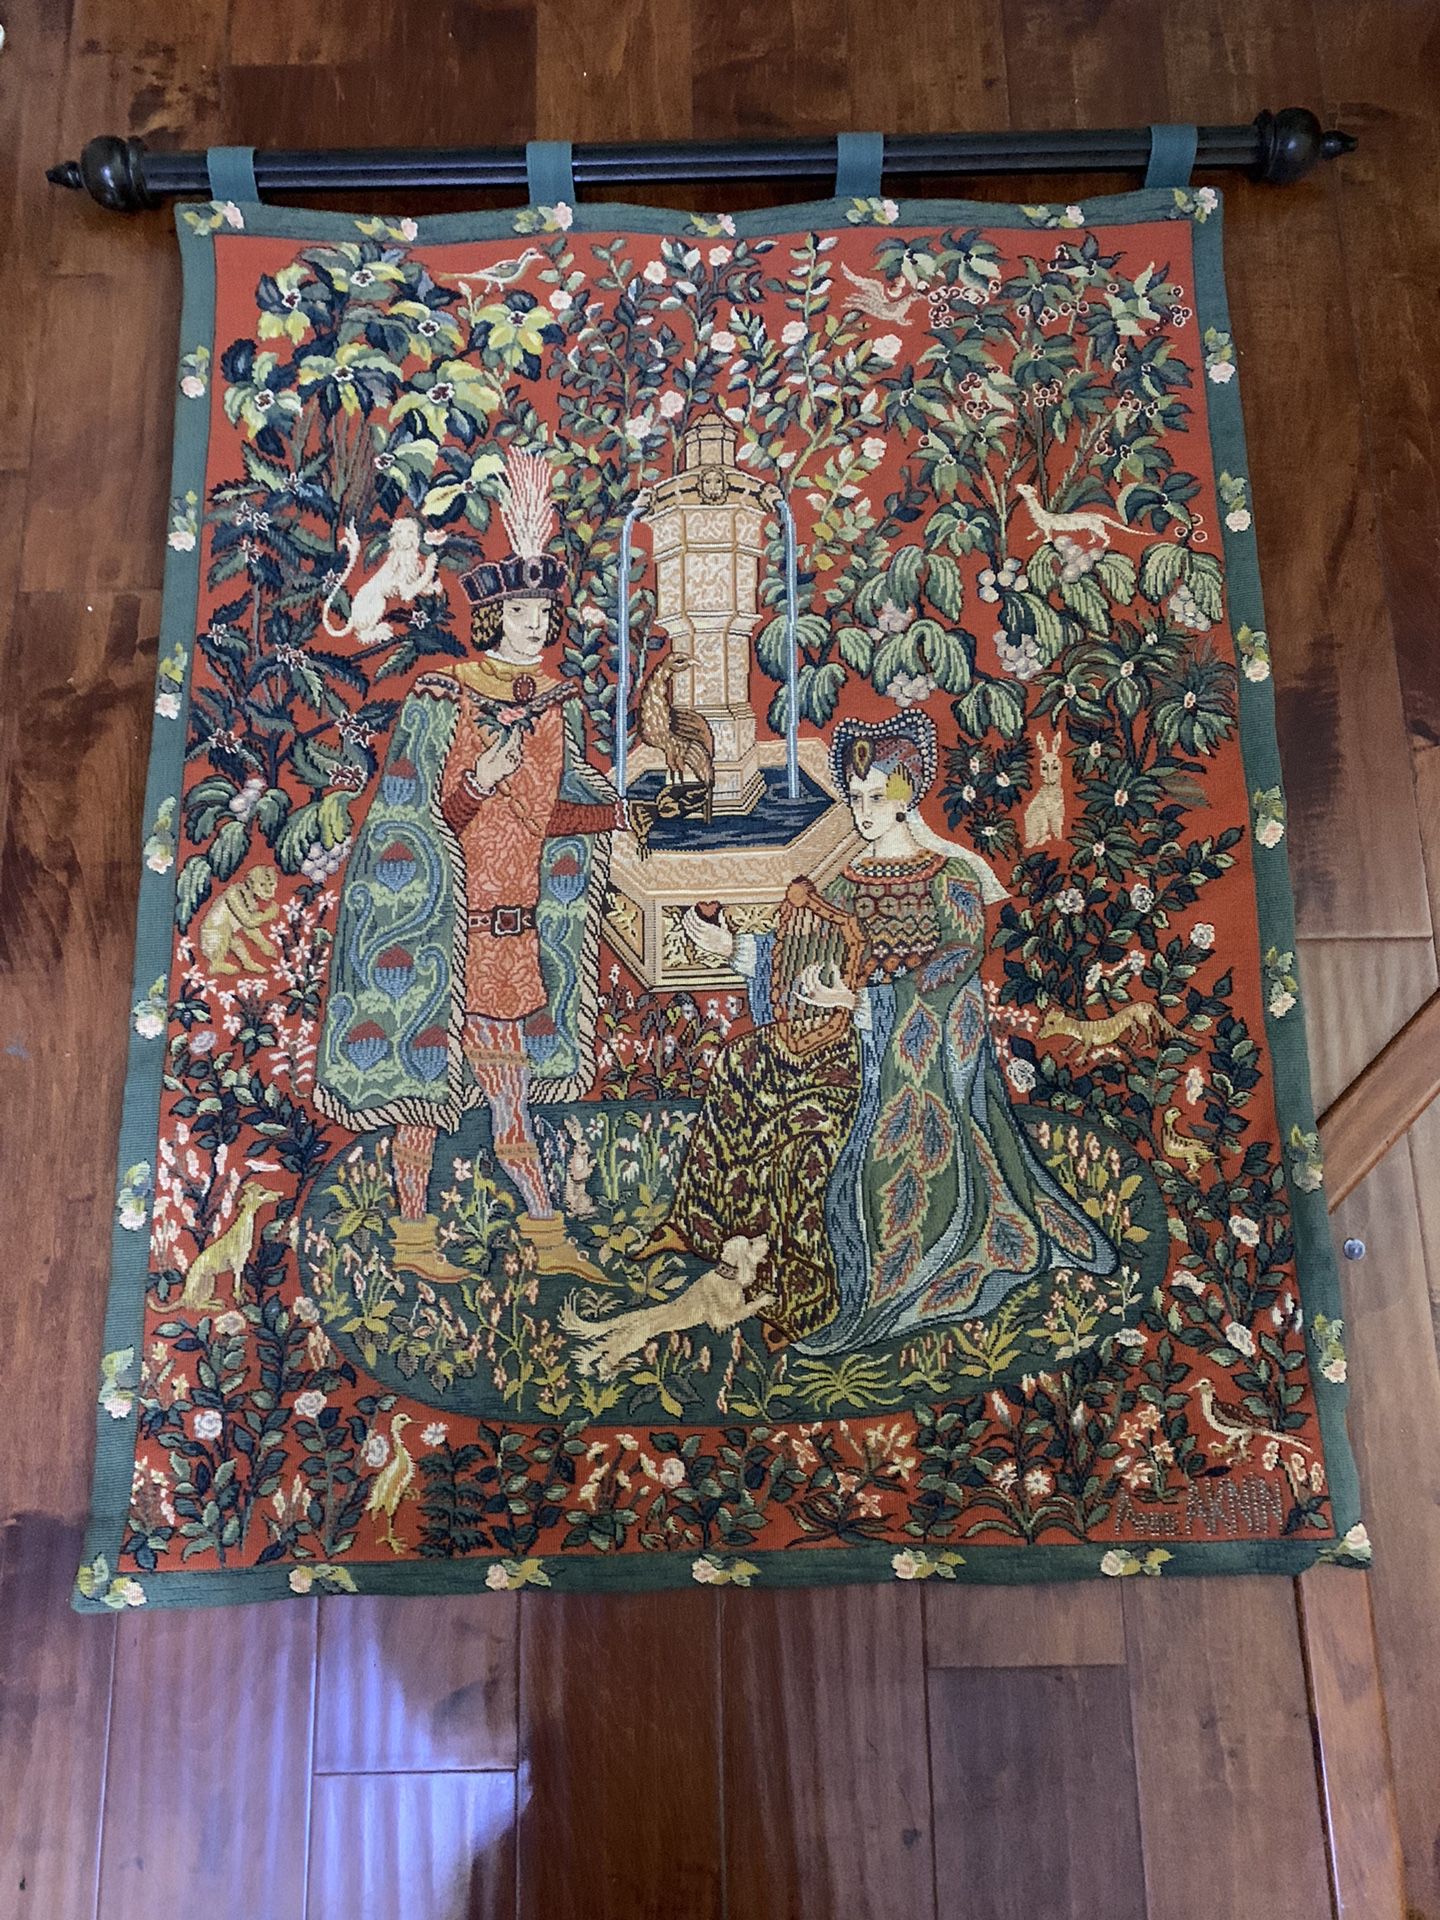 Anne Aknin Le Roman de la Rose 1985 French Wool Jacquard Tapestry On wood pole